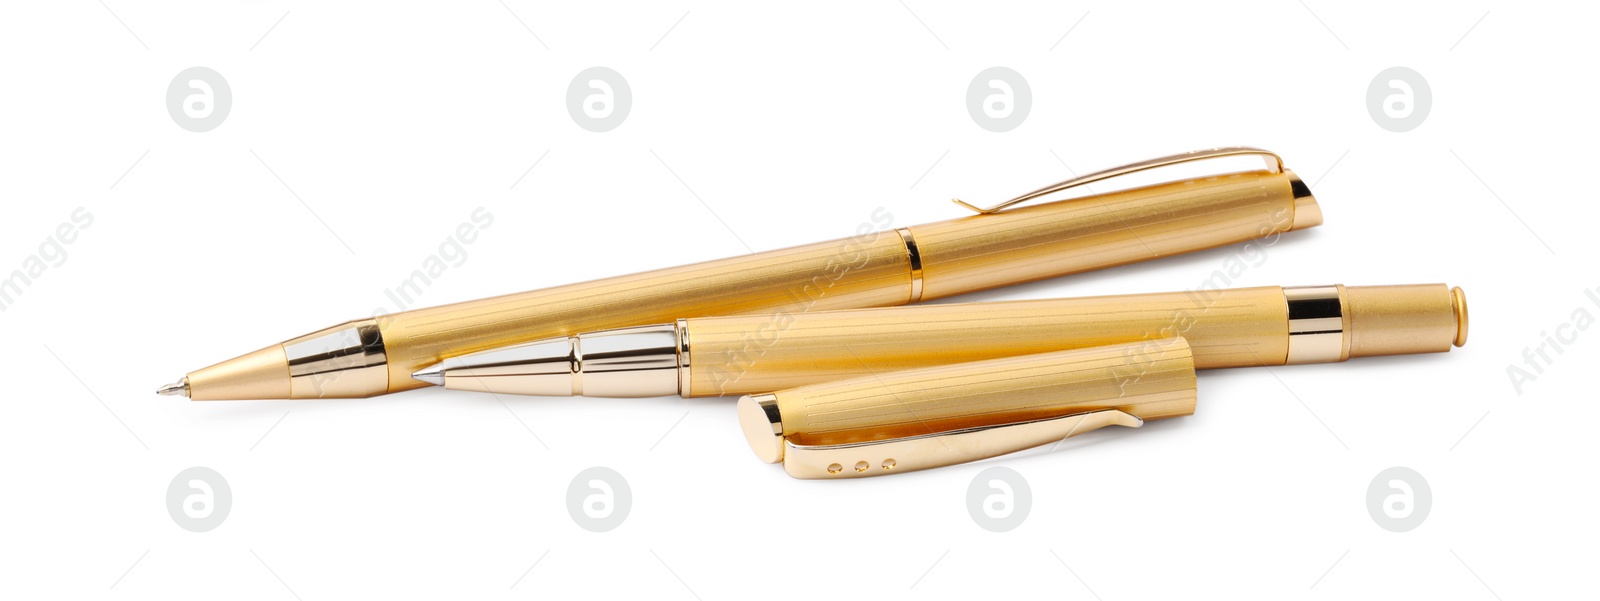 Photo of New stylish golden pens isolated on white